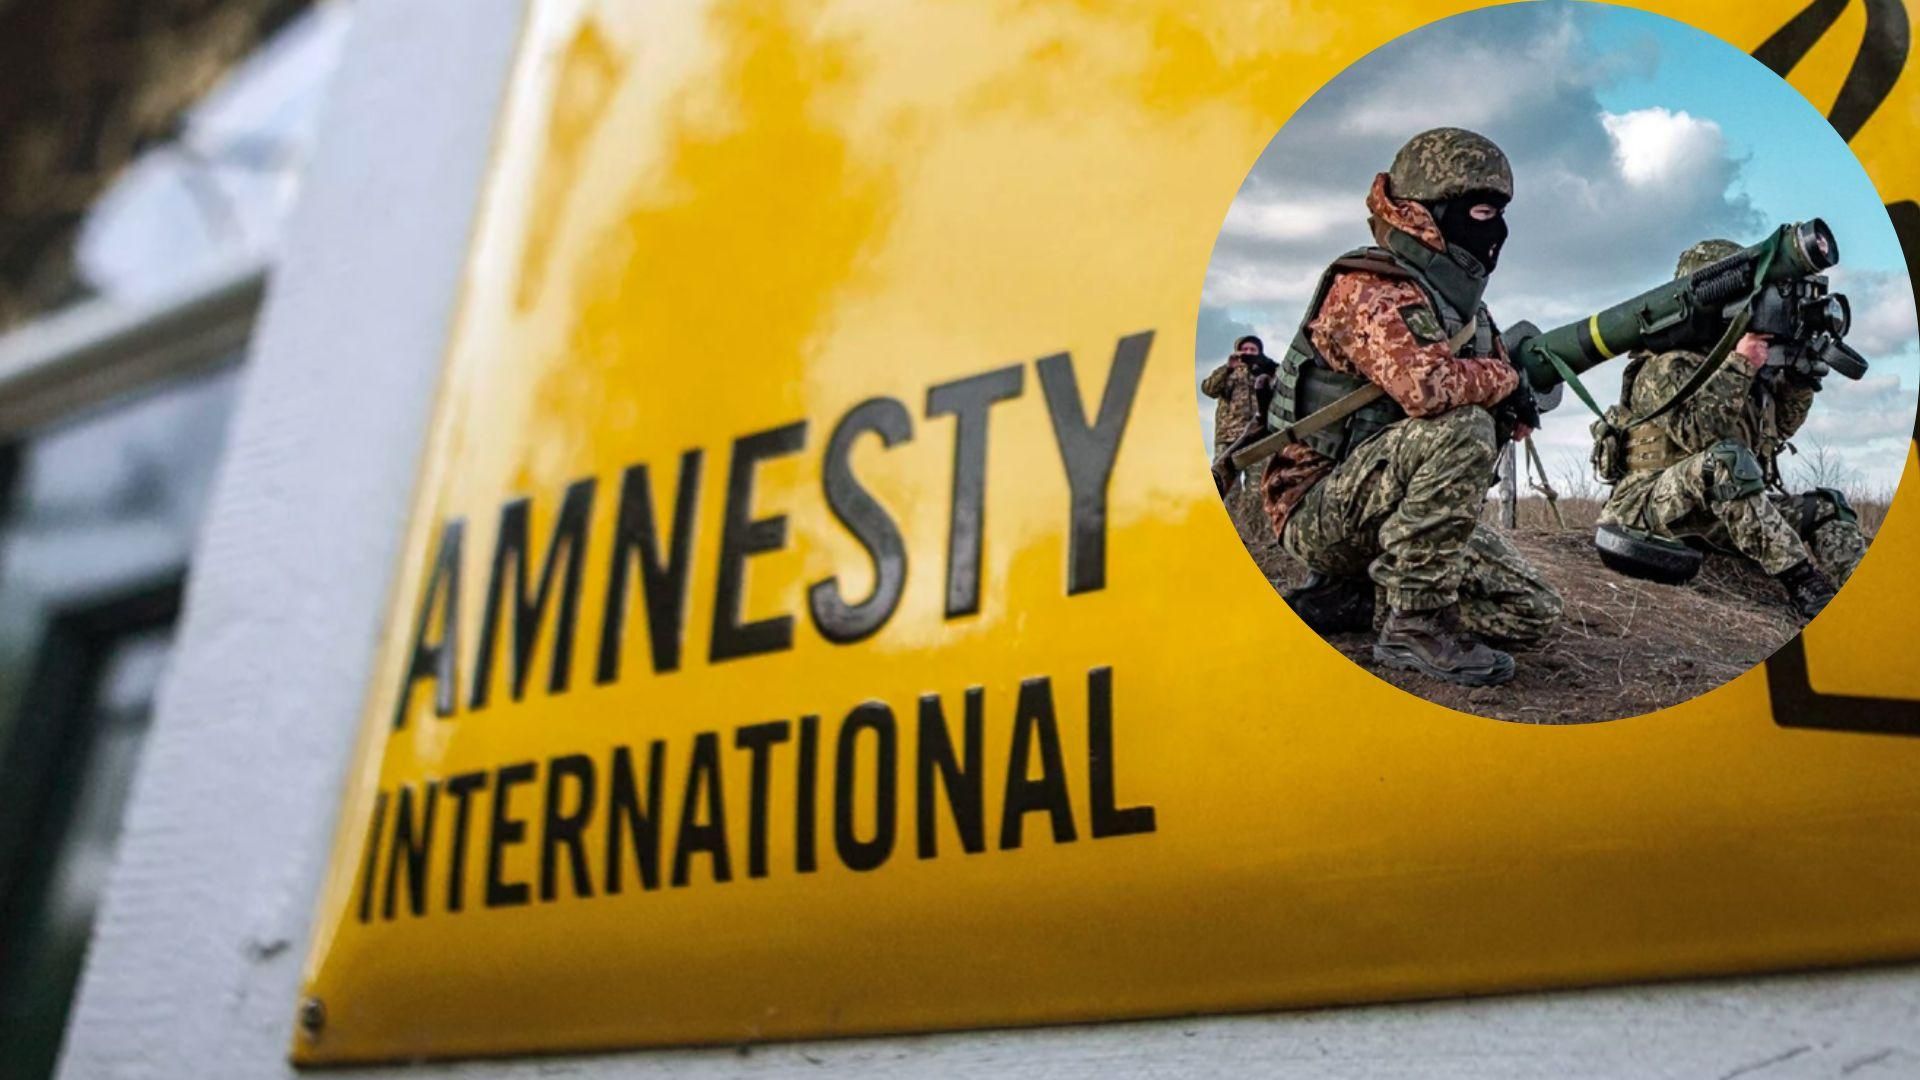 Звіт Amnesty International про ЗСУ вбив репутацію організації